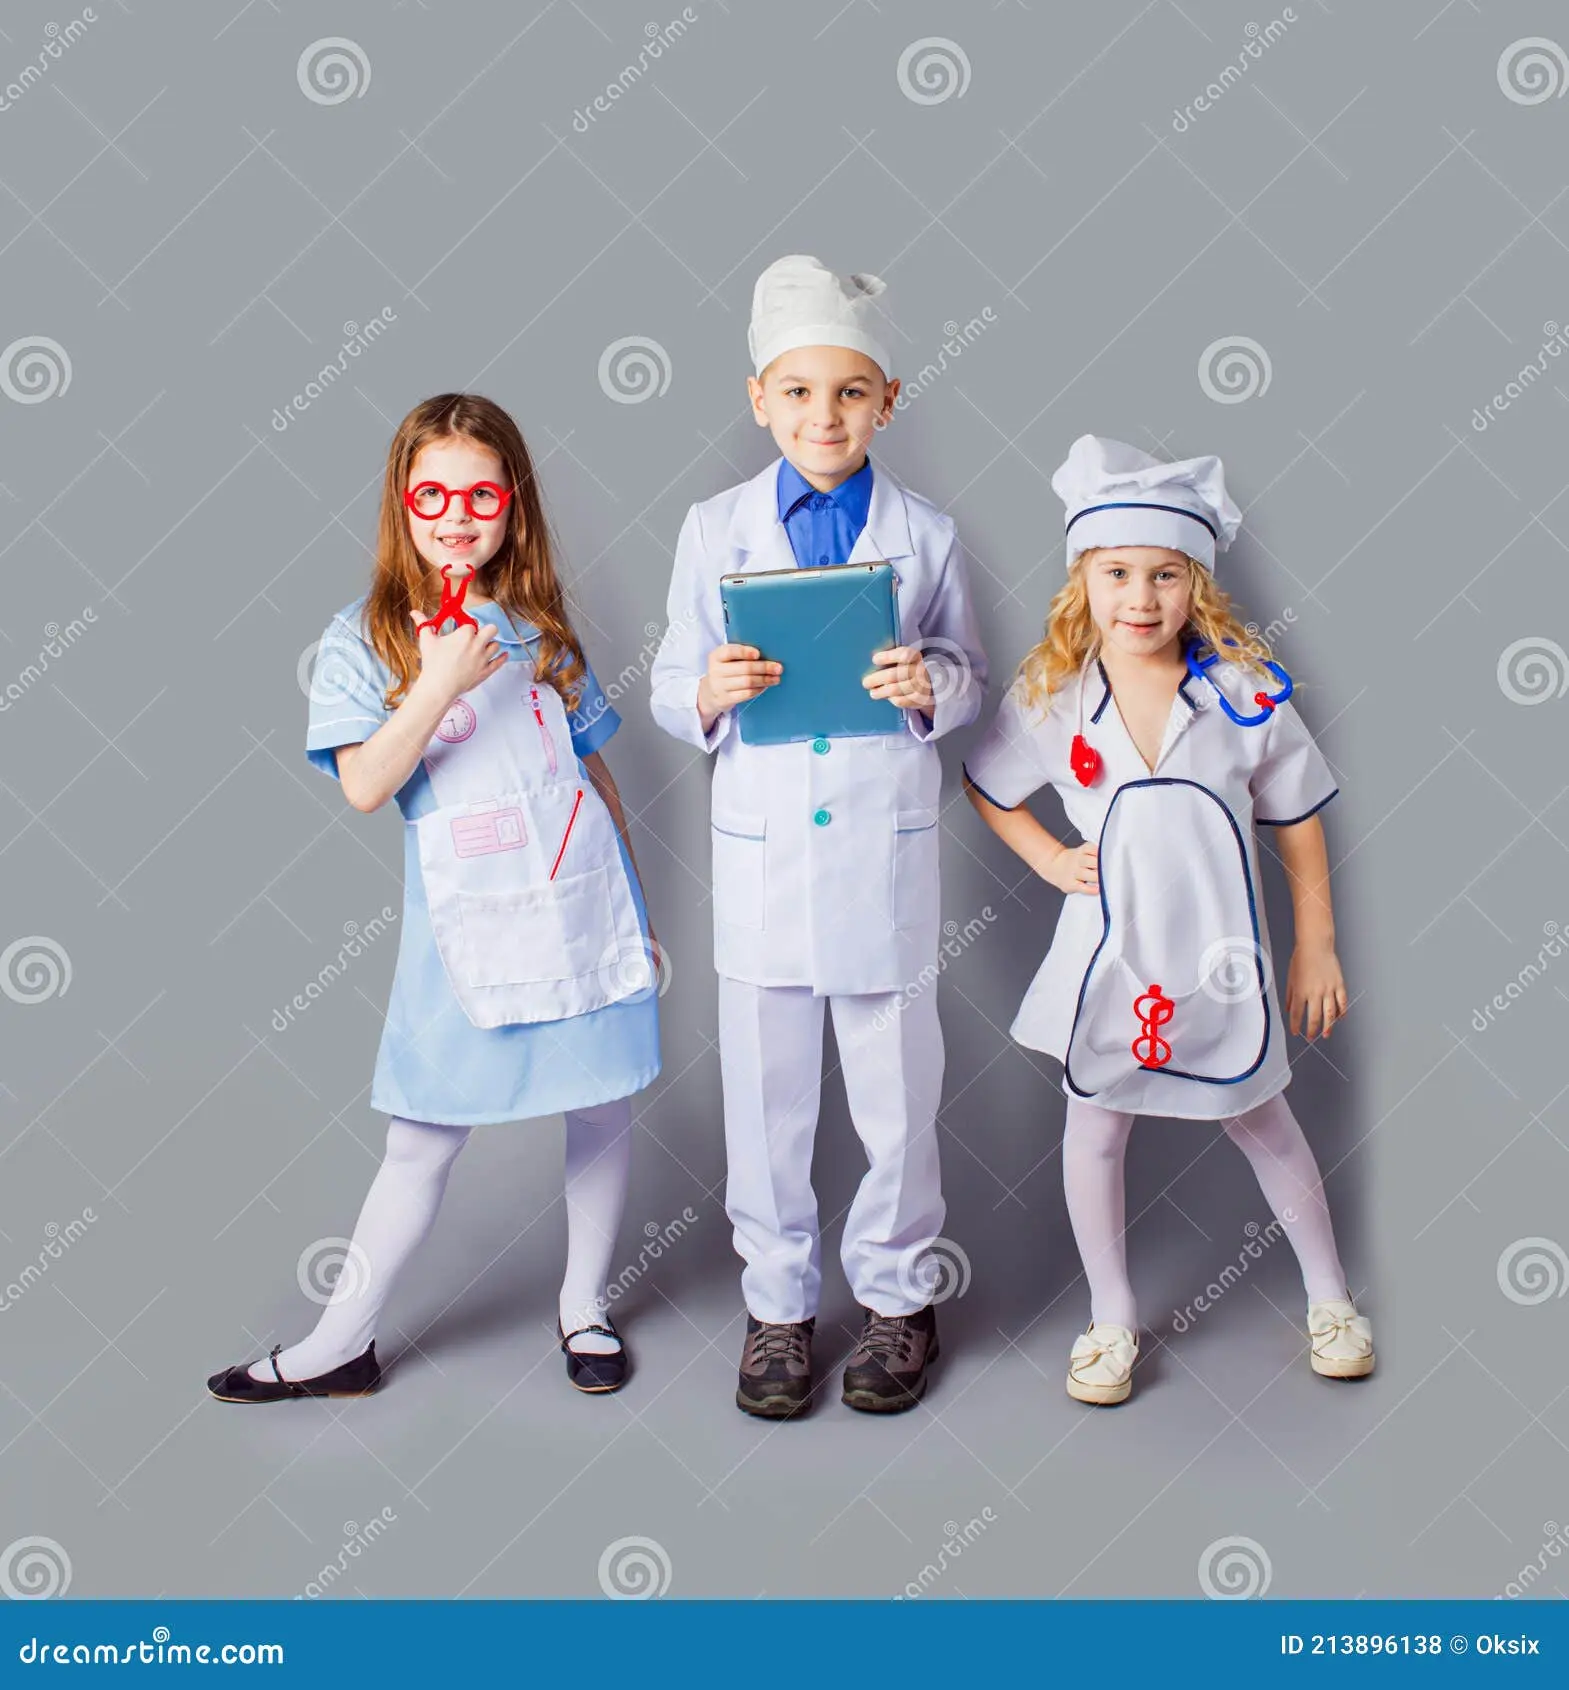 niños vestidos de medicos - Cómo son los trajes de doctores